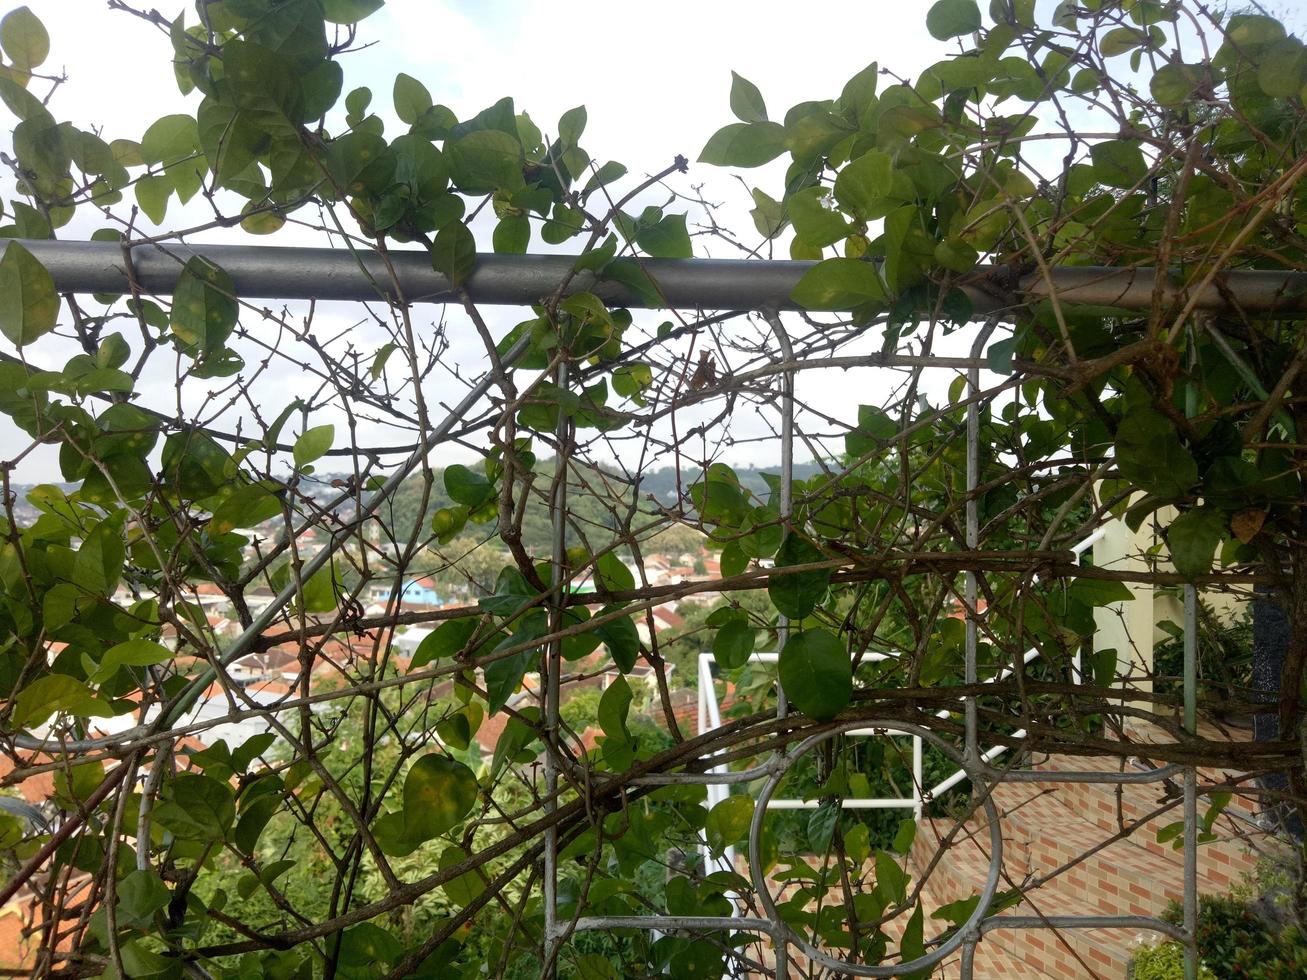 jasminplanta vinstockar på staketet foto